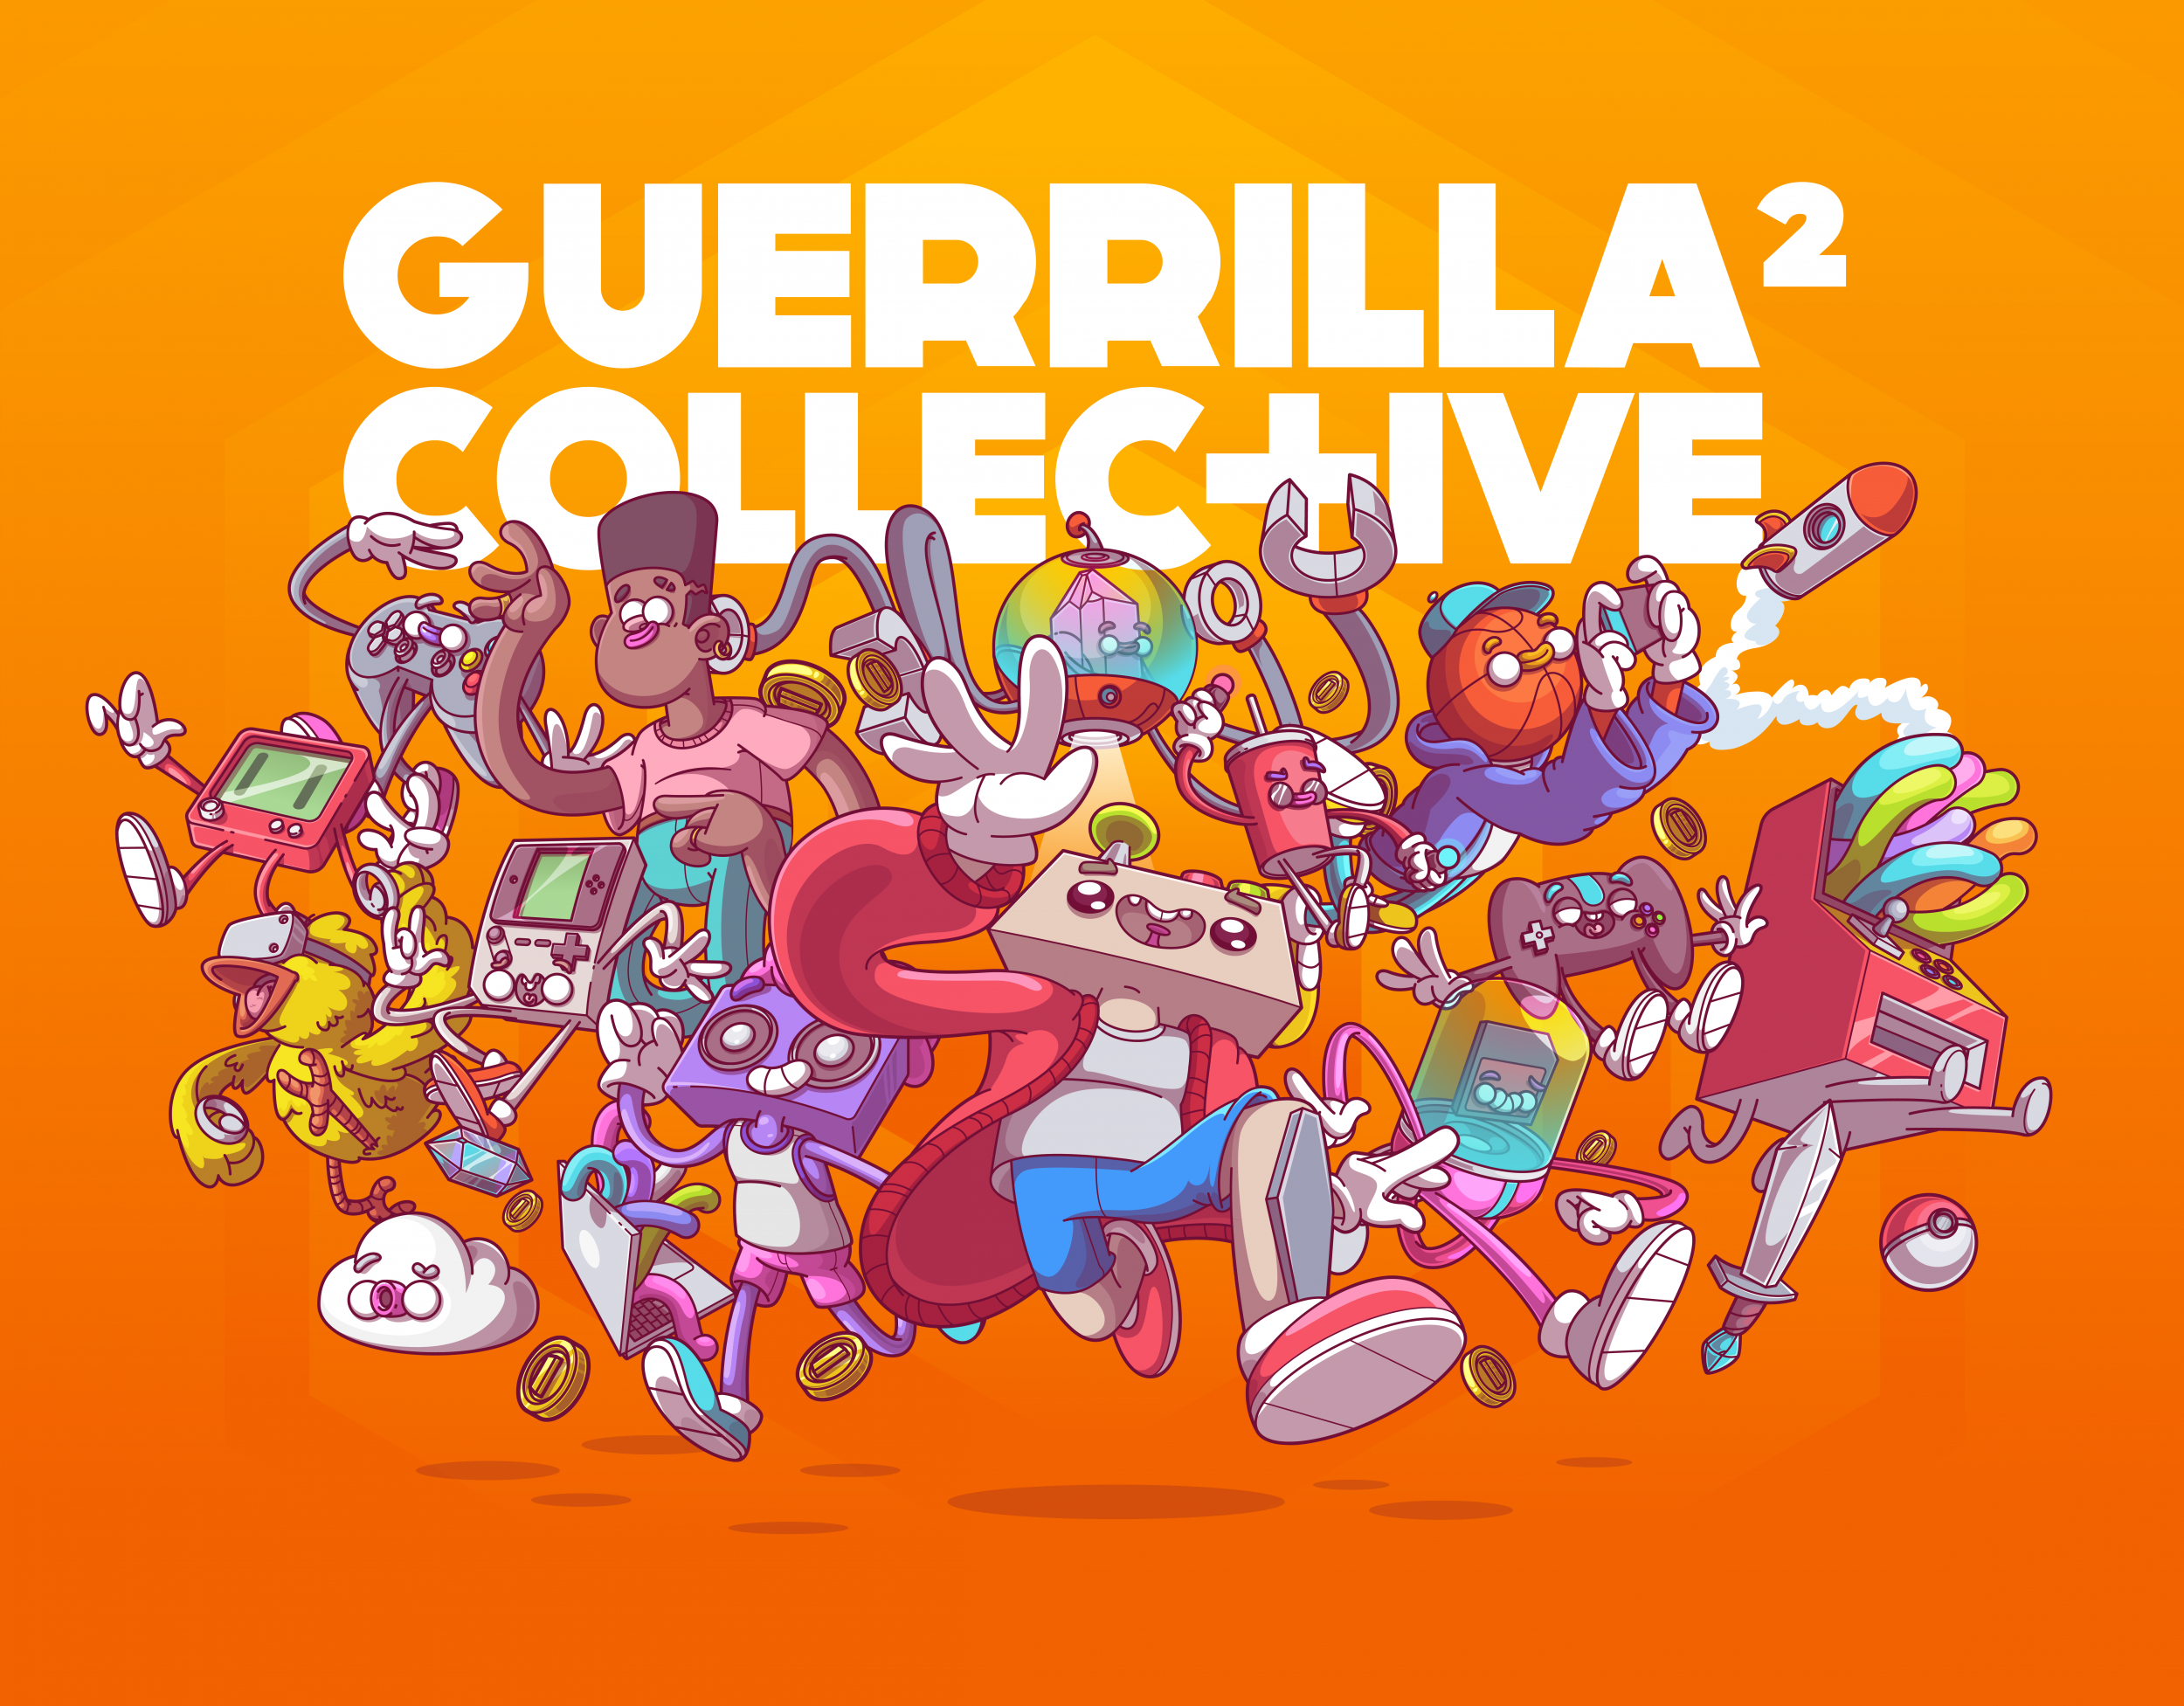 offical 2021 guerrilla collective logo